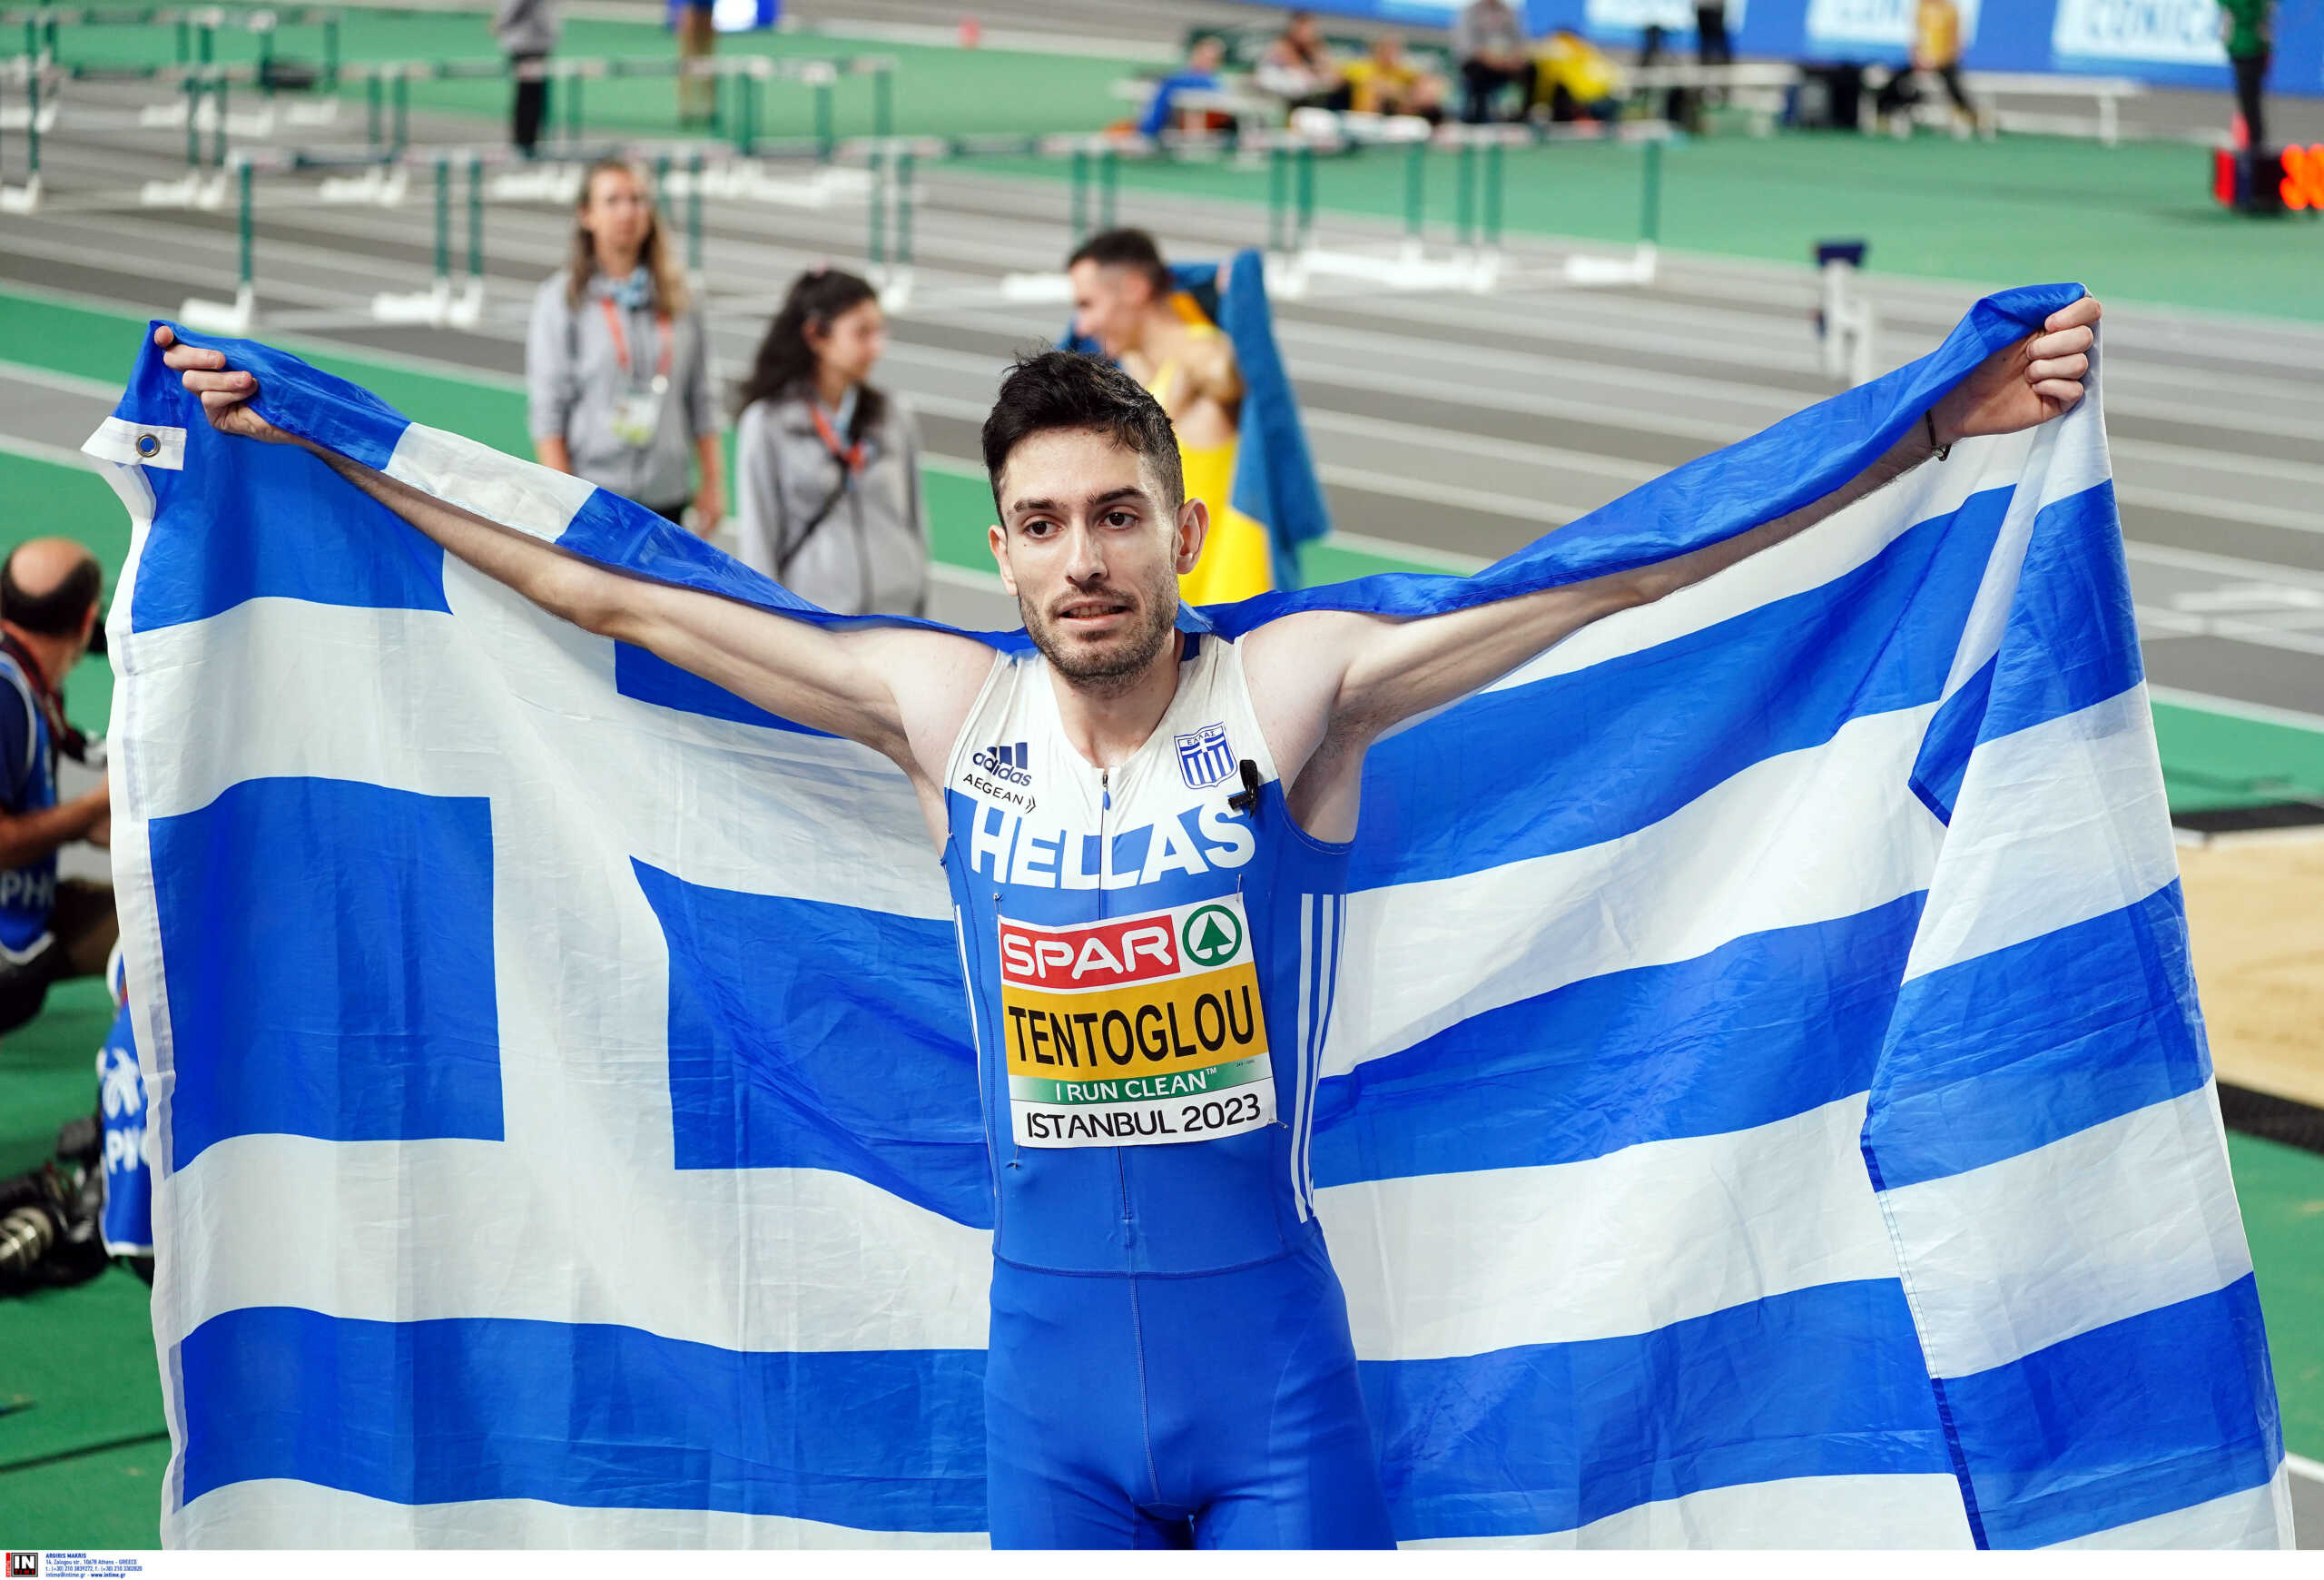 Παγκόσμιο πρωτάθλημα στίβου: Oι Έλληνες αθλητές που θα βρεθούν στην διοργάνωση